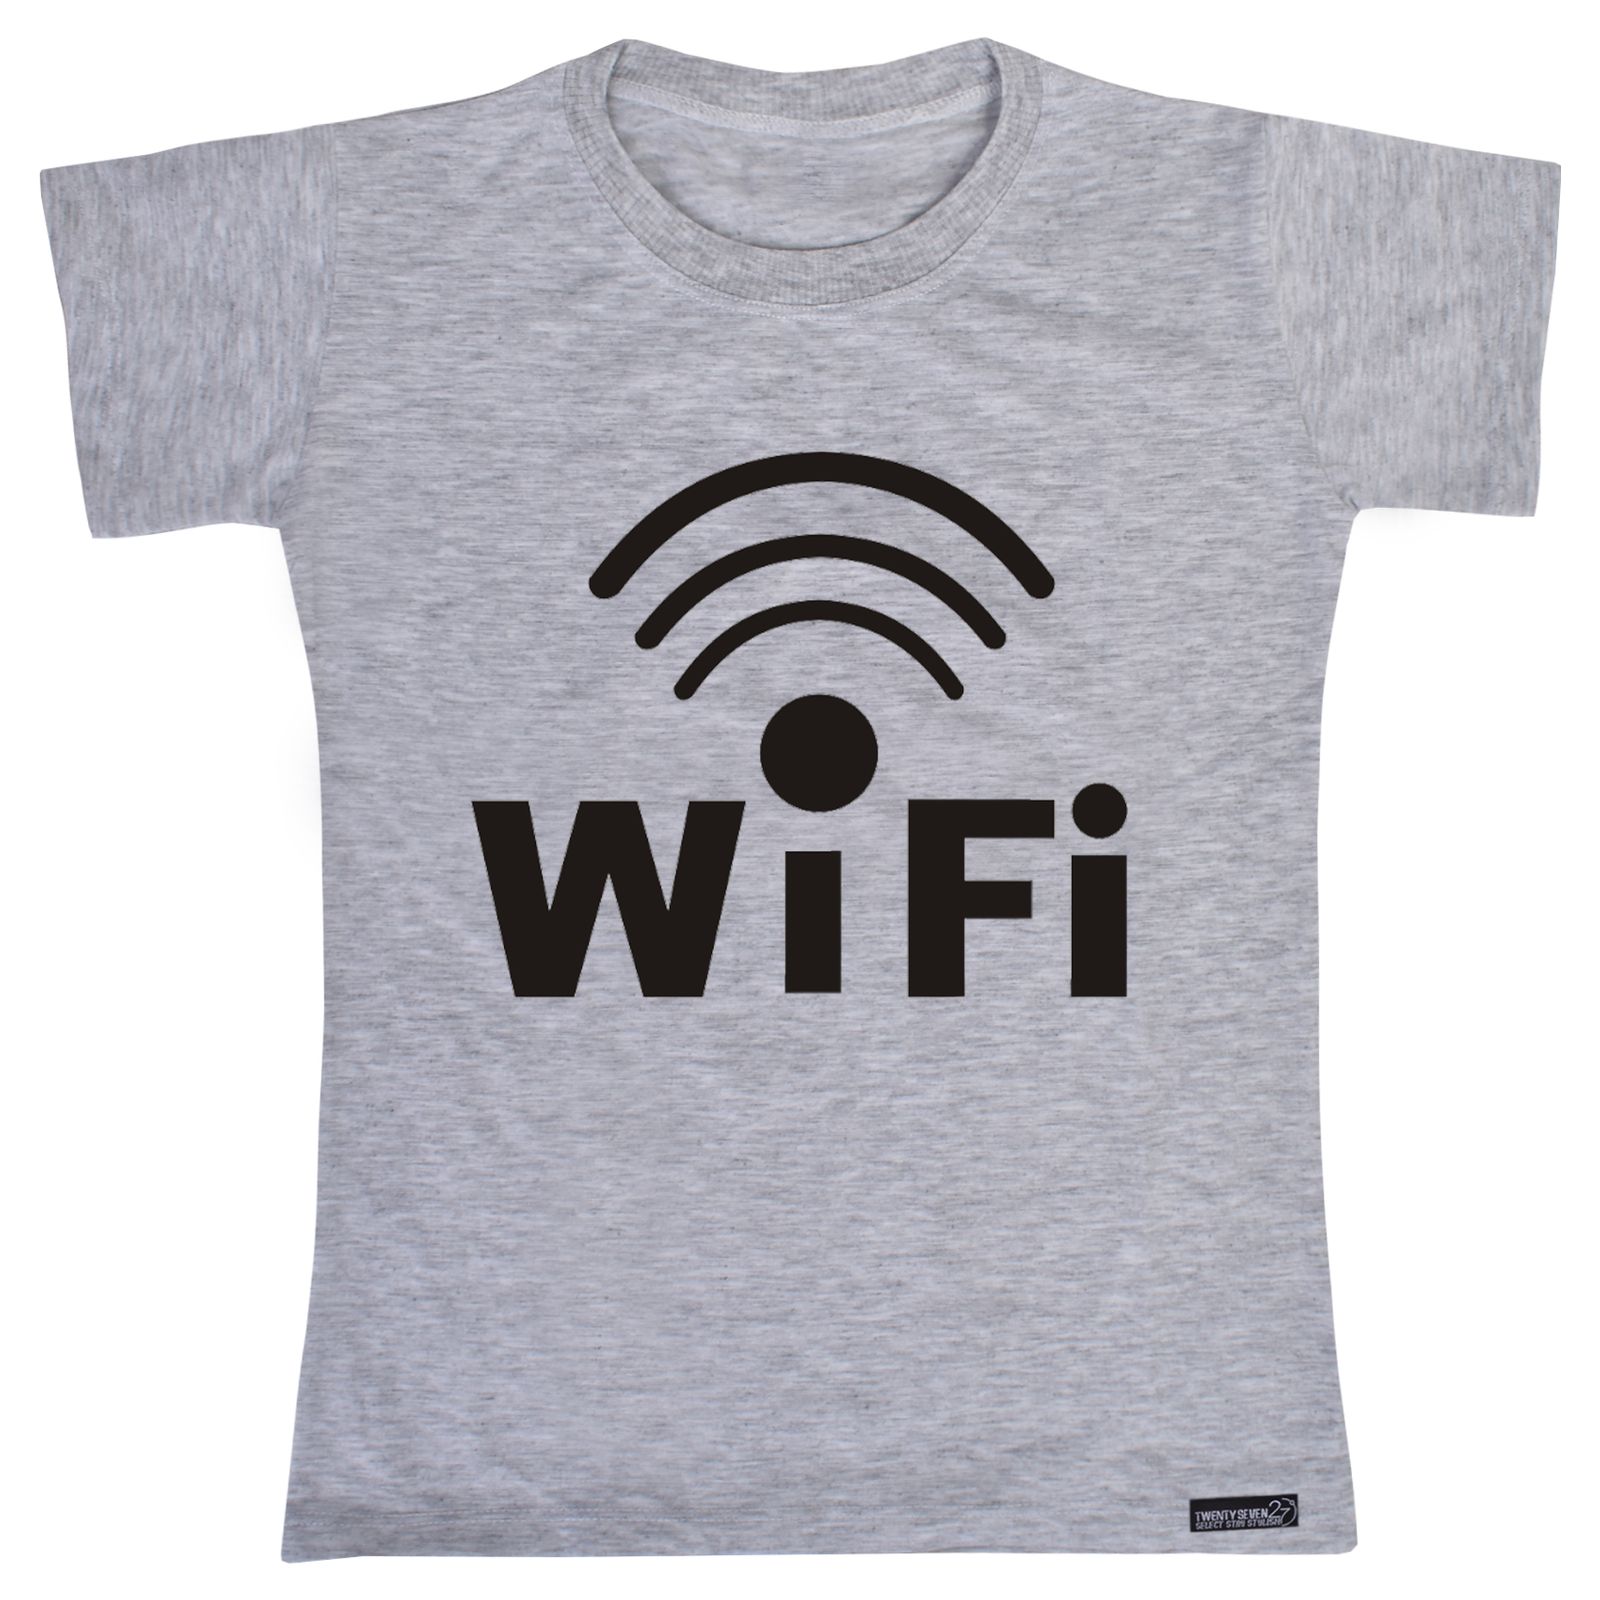 تی شرت آستین کوتاه پسرانه 27 مدل WiFi کد MH868 -  - 2